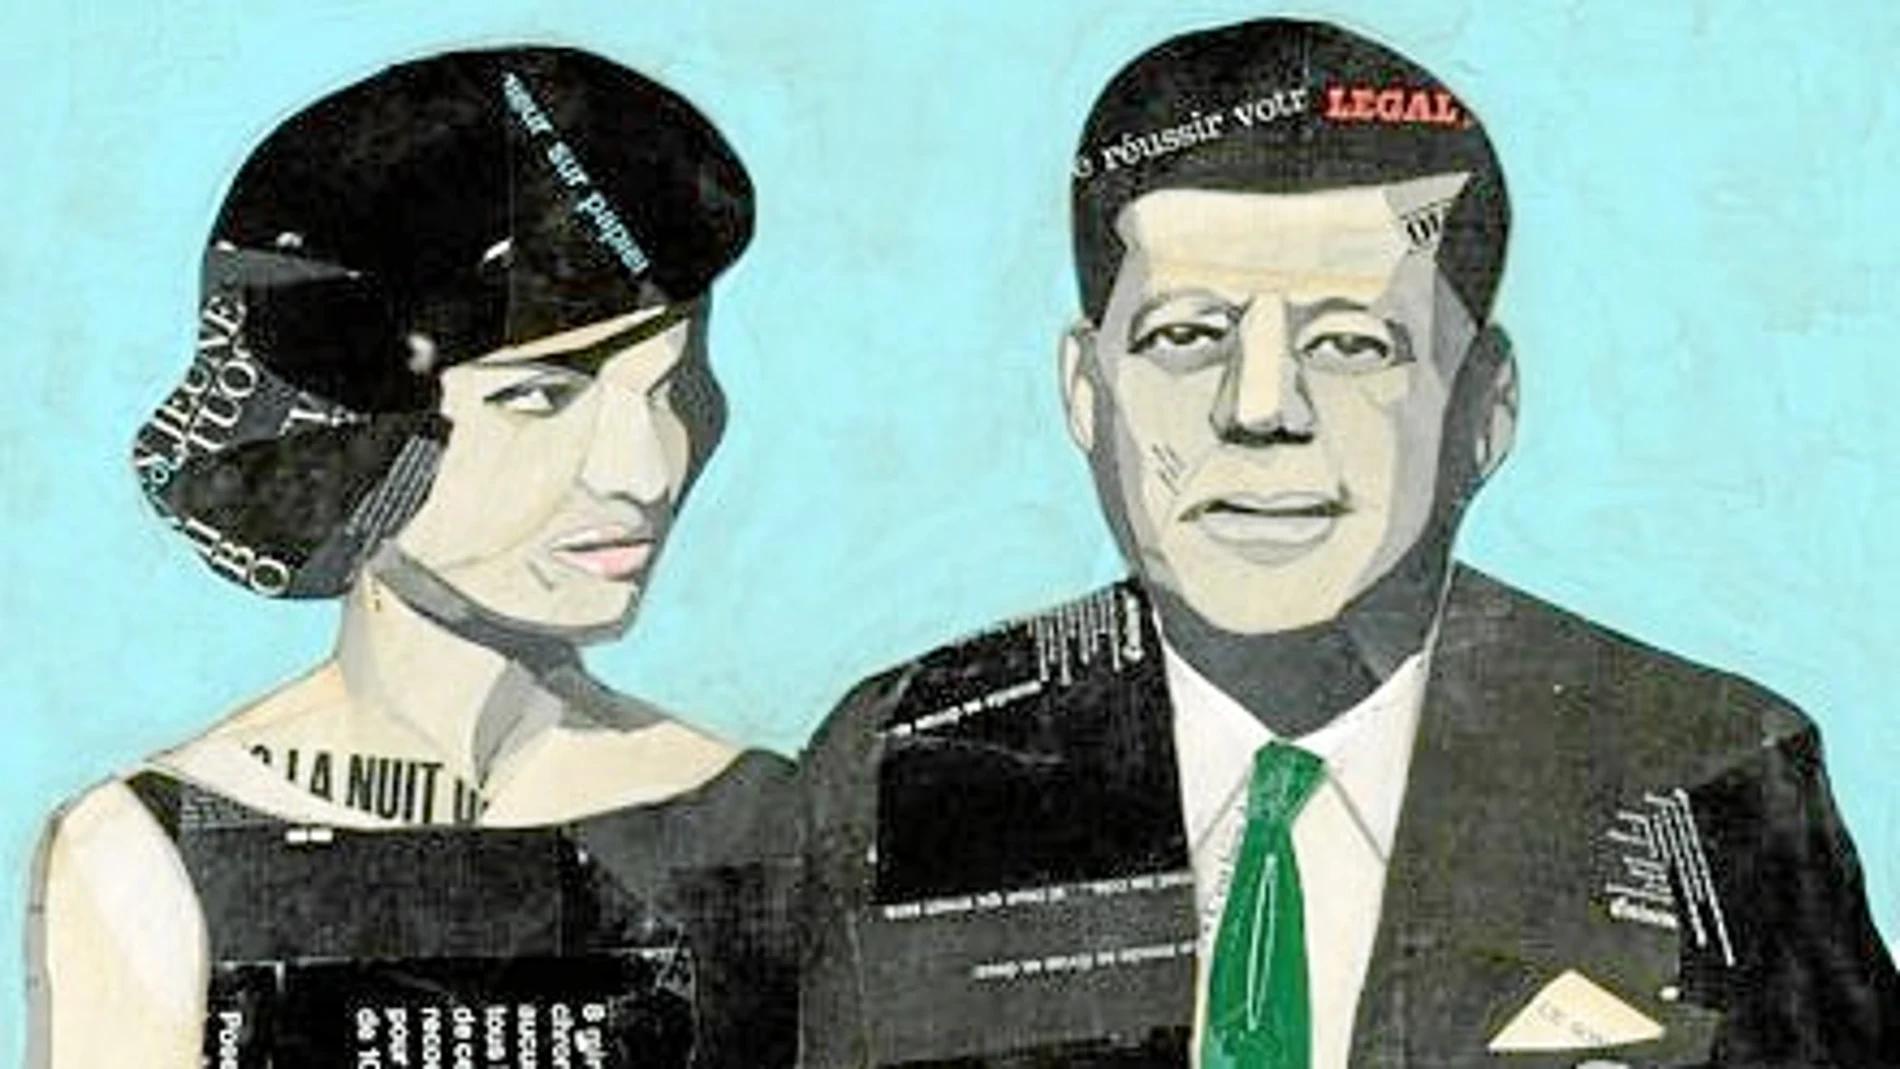 Un fragmento de «La sospecha», el cuadro de García Villegas que toma como punto de partida una fotografía de los Kennedy por Avedon